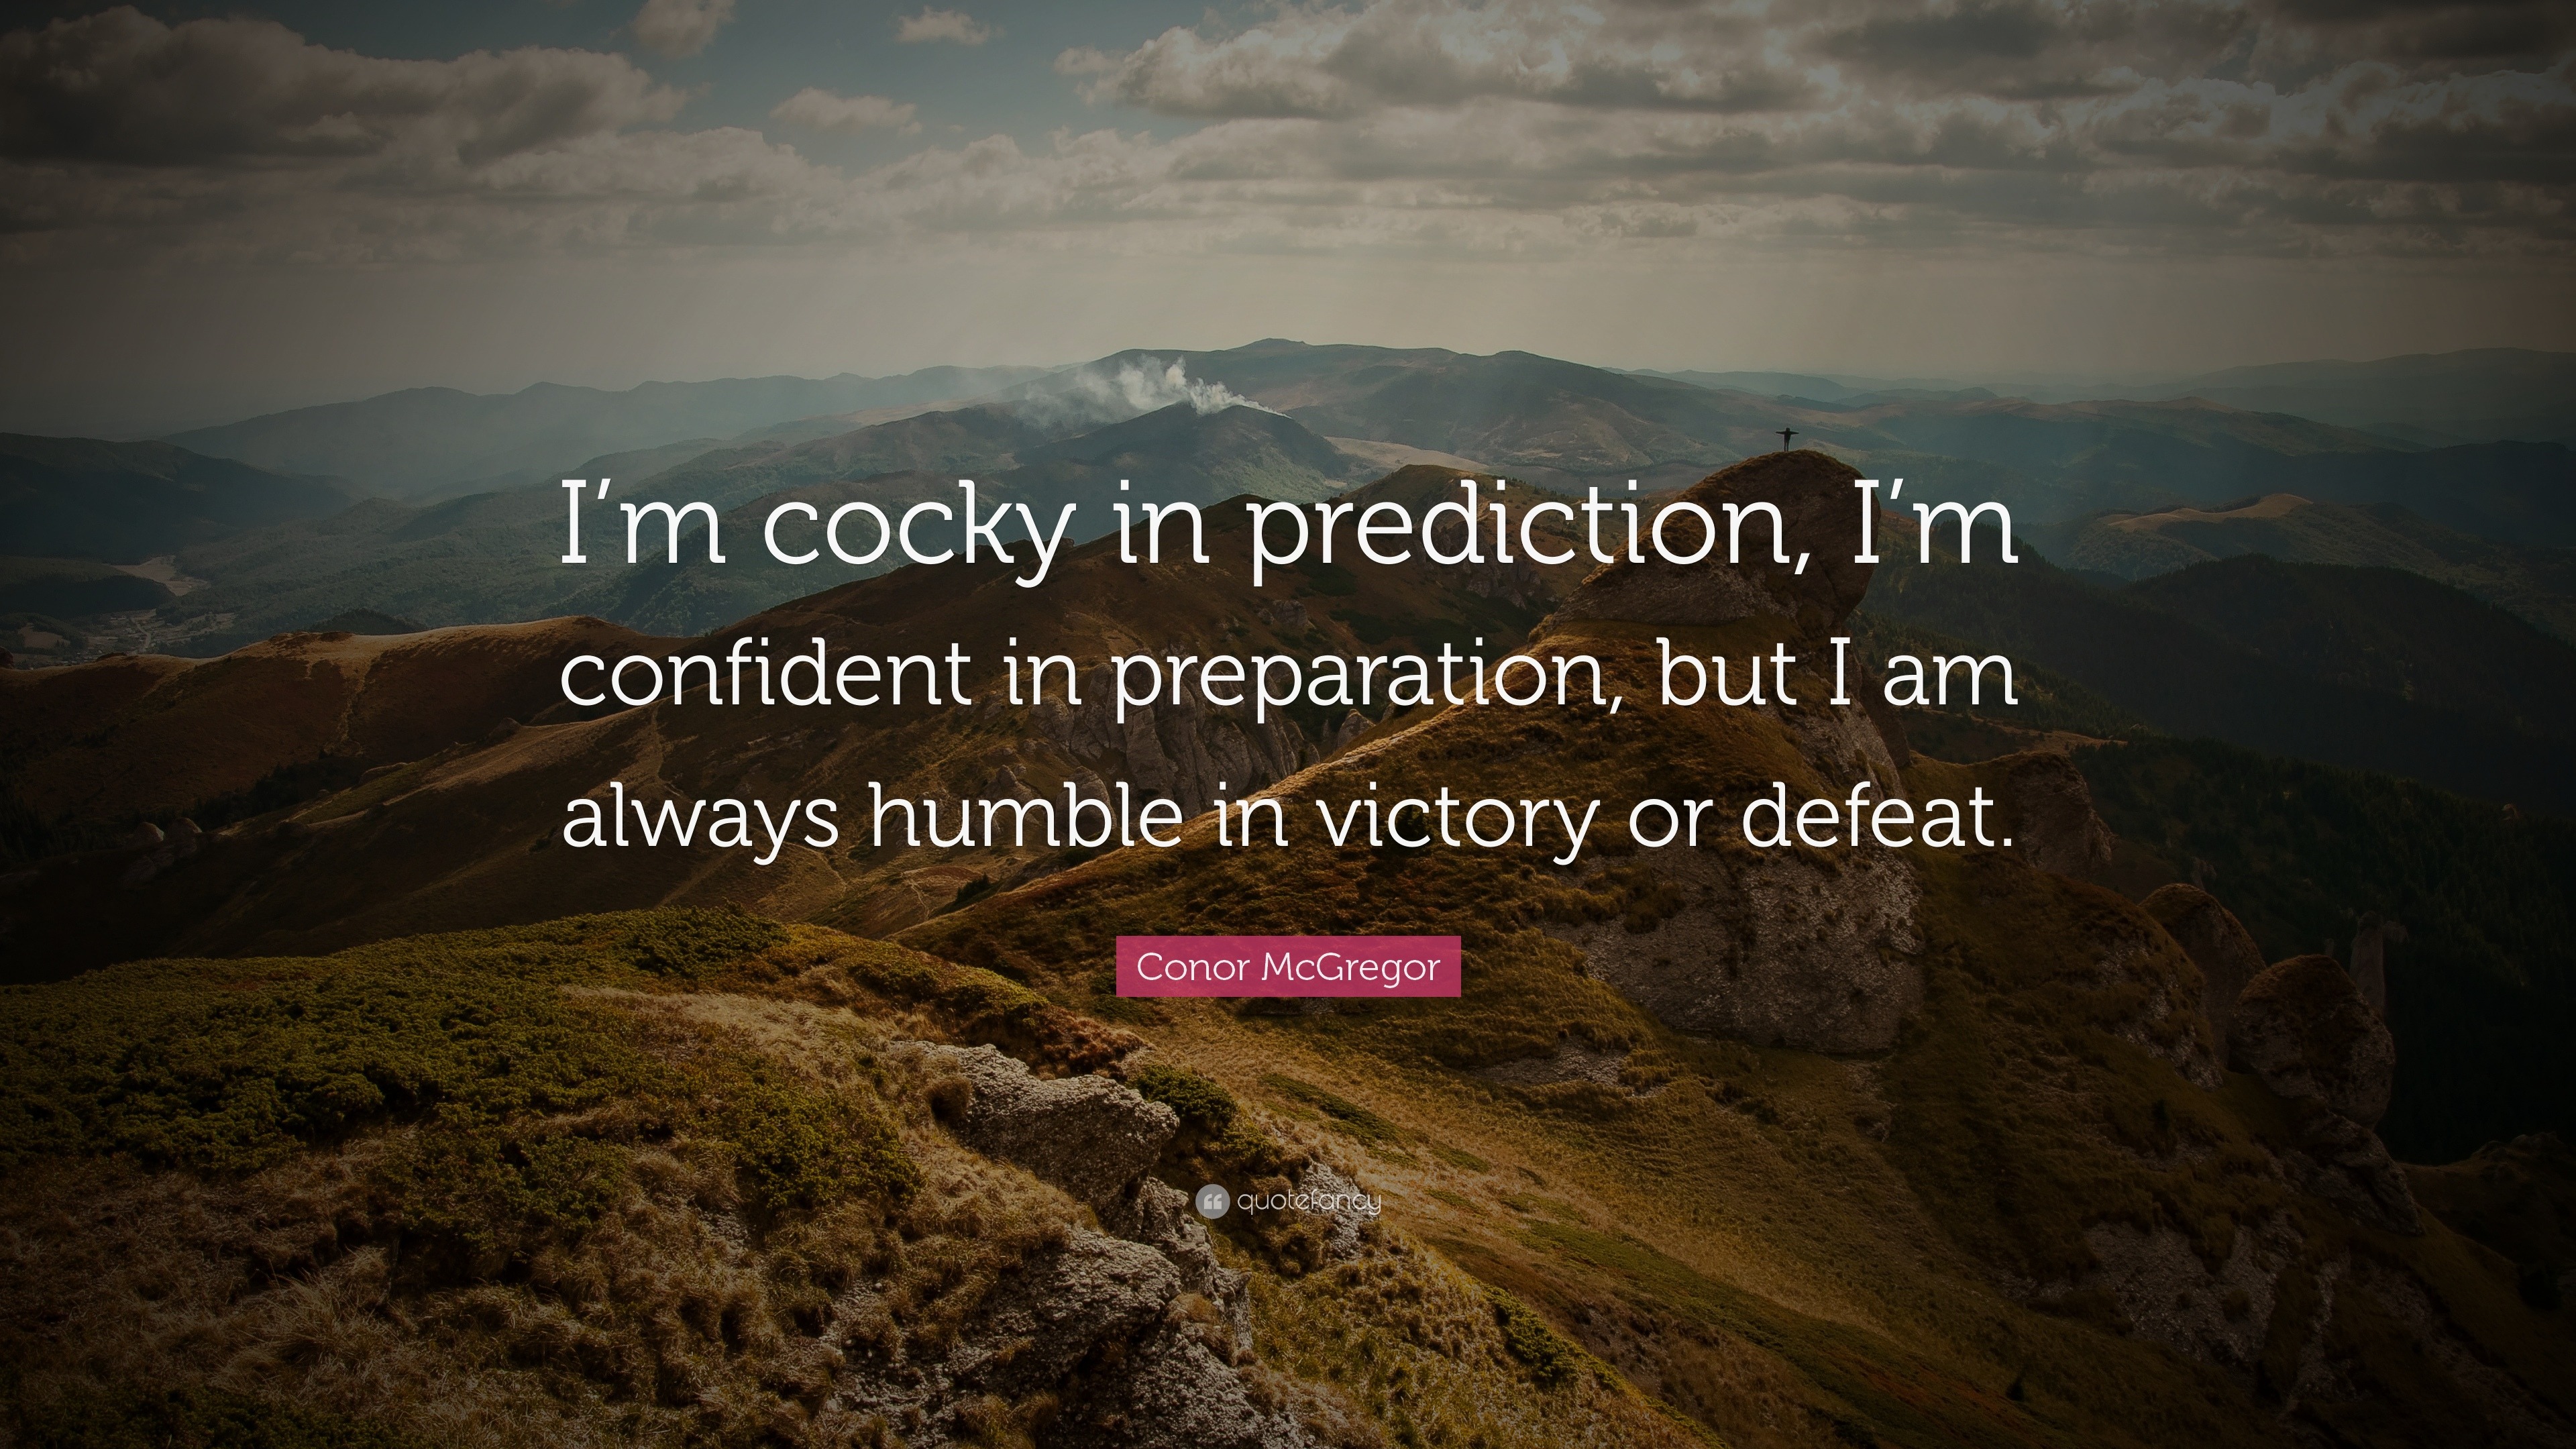 Conor McGregor Quote: “I'm cocky in prediction, I'm confident in  preparation, but I am